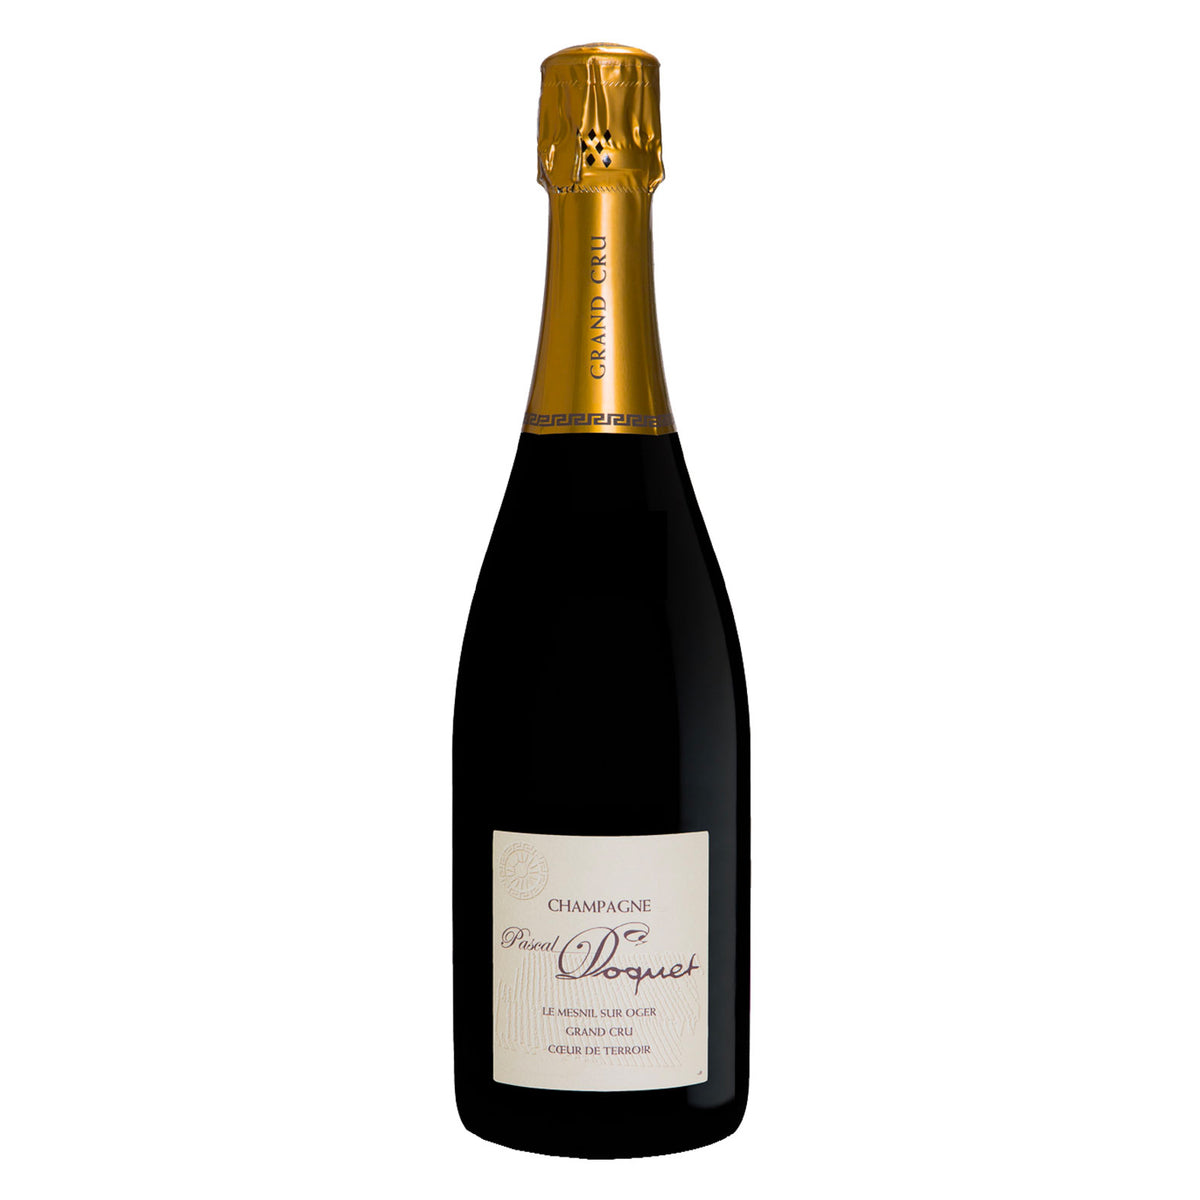 PASCAL DOQUET Champagne Grand Cru Brut &quot;Le Mesnil Sur Oger - Coeur de Terroir&quot; 2009